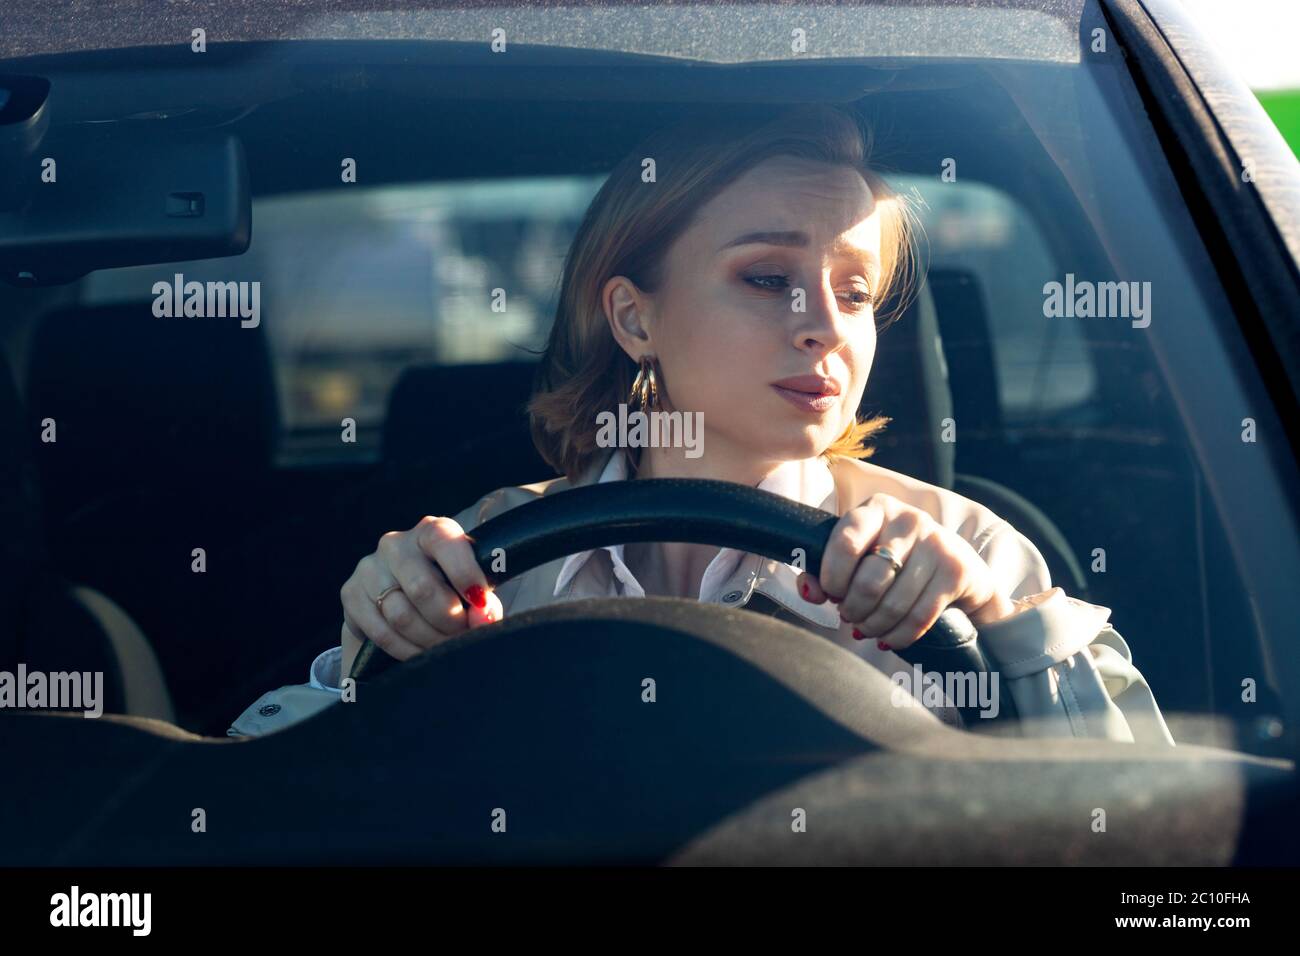 Frau fährt ihr Auto zum ersten Mal, versucht einen Autounfall zu vermeiden, ist sehr nervös und ängstlich, sorgt sich, klammert sich fest am Rad. Unerfahrenwerden Stockfoto